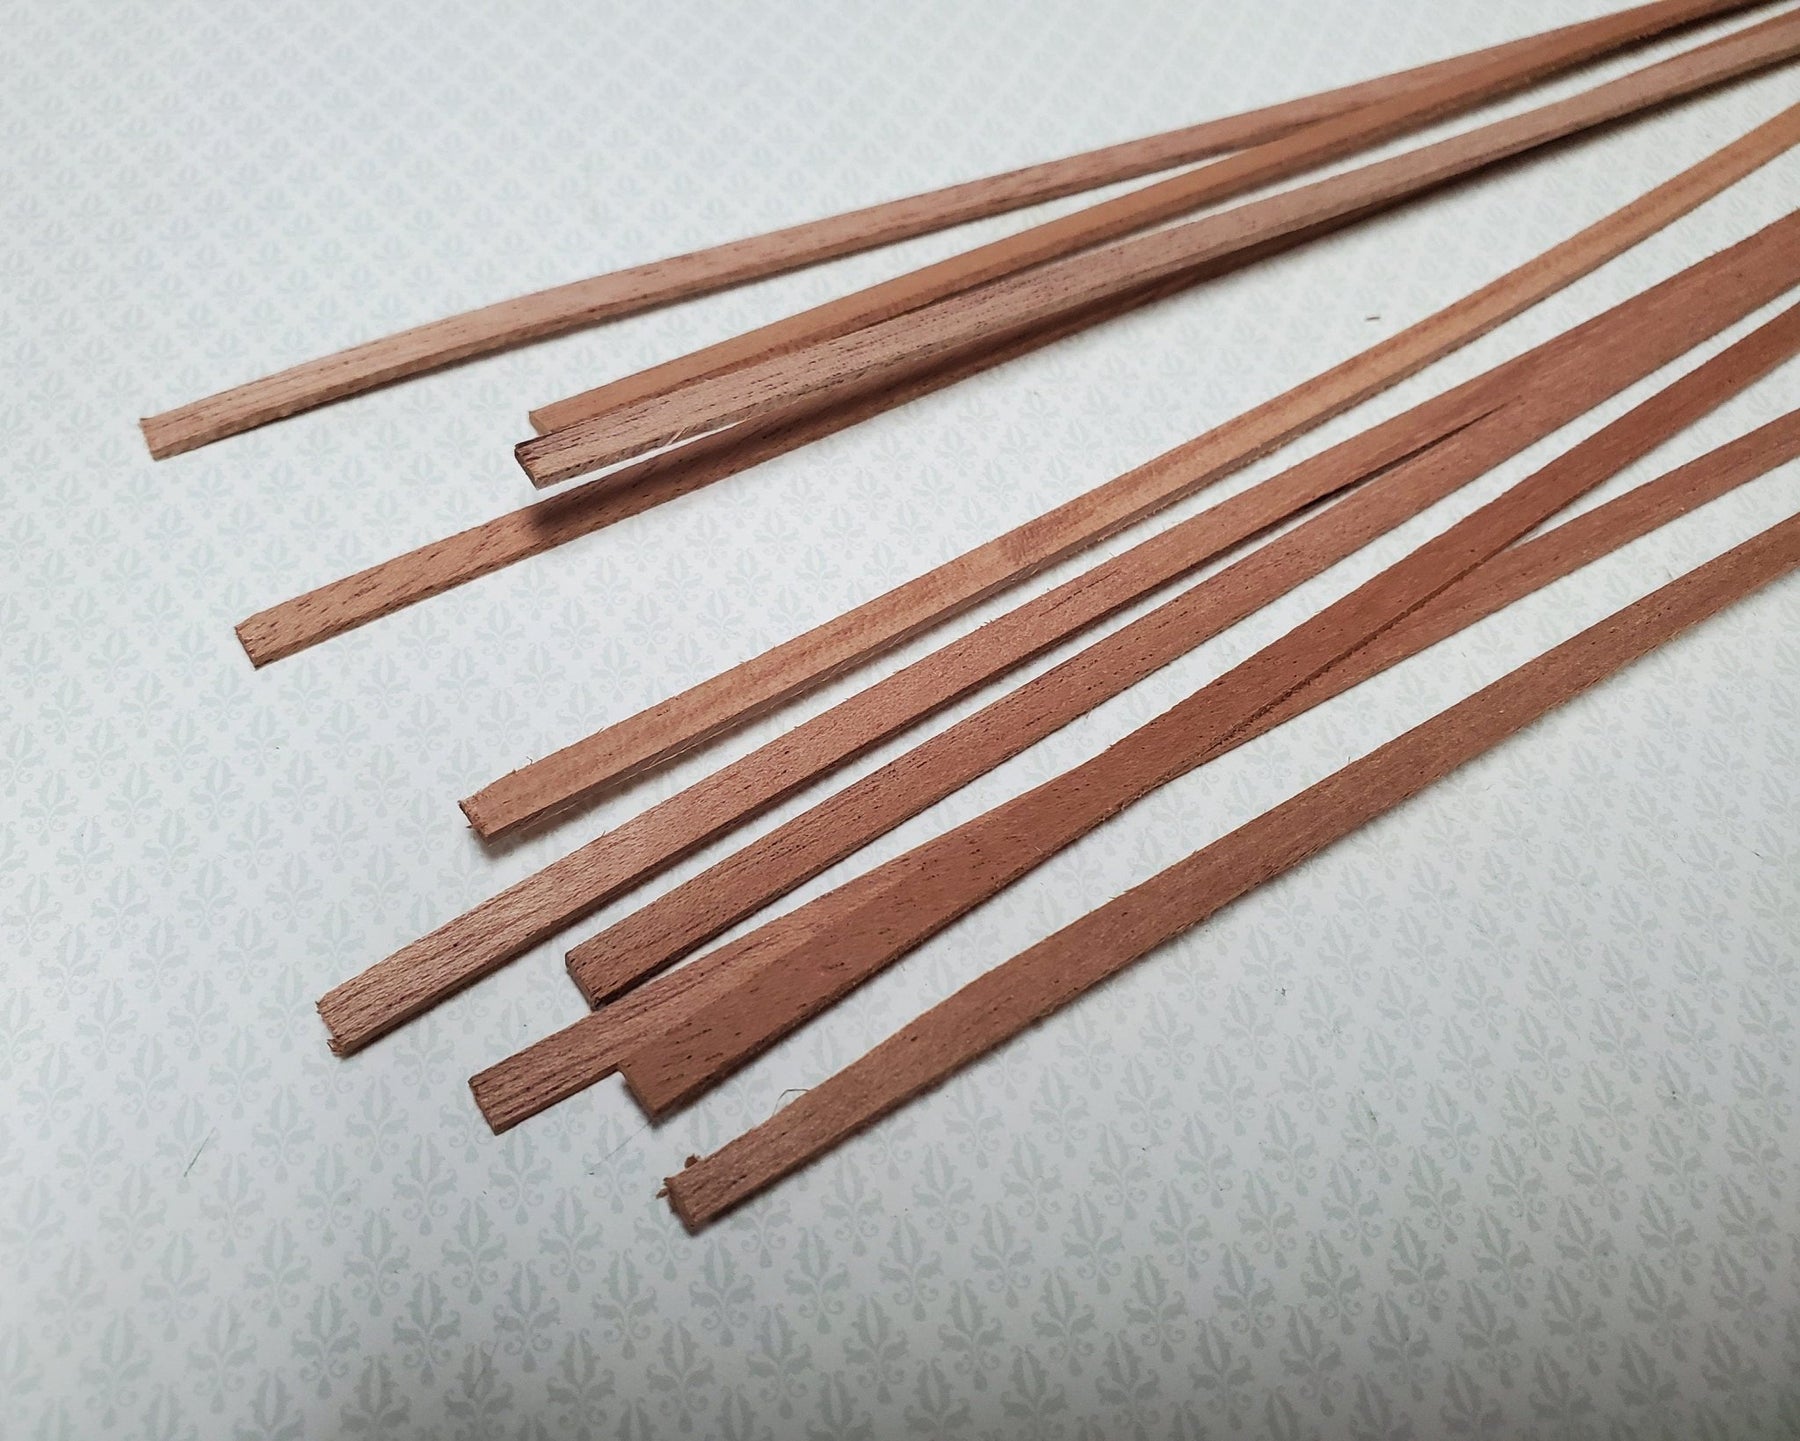 Walnut Wood Strips X10 1/8 X 1/4 X 6 Long Crafts Models Miniatures 